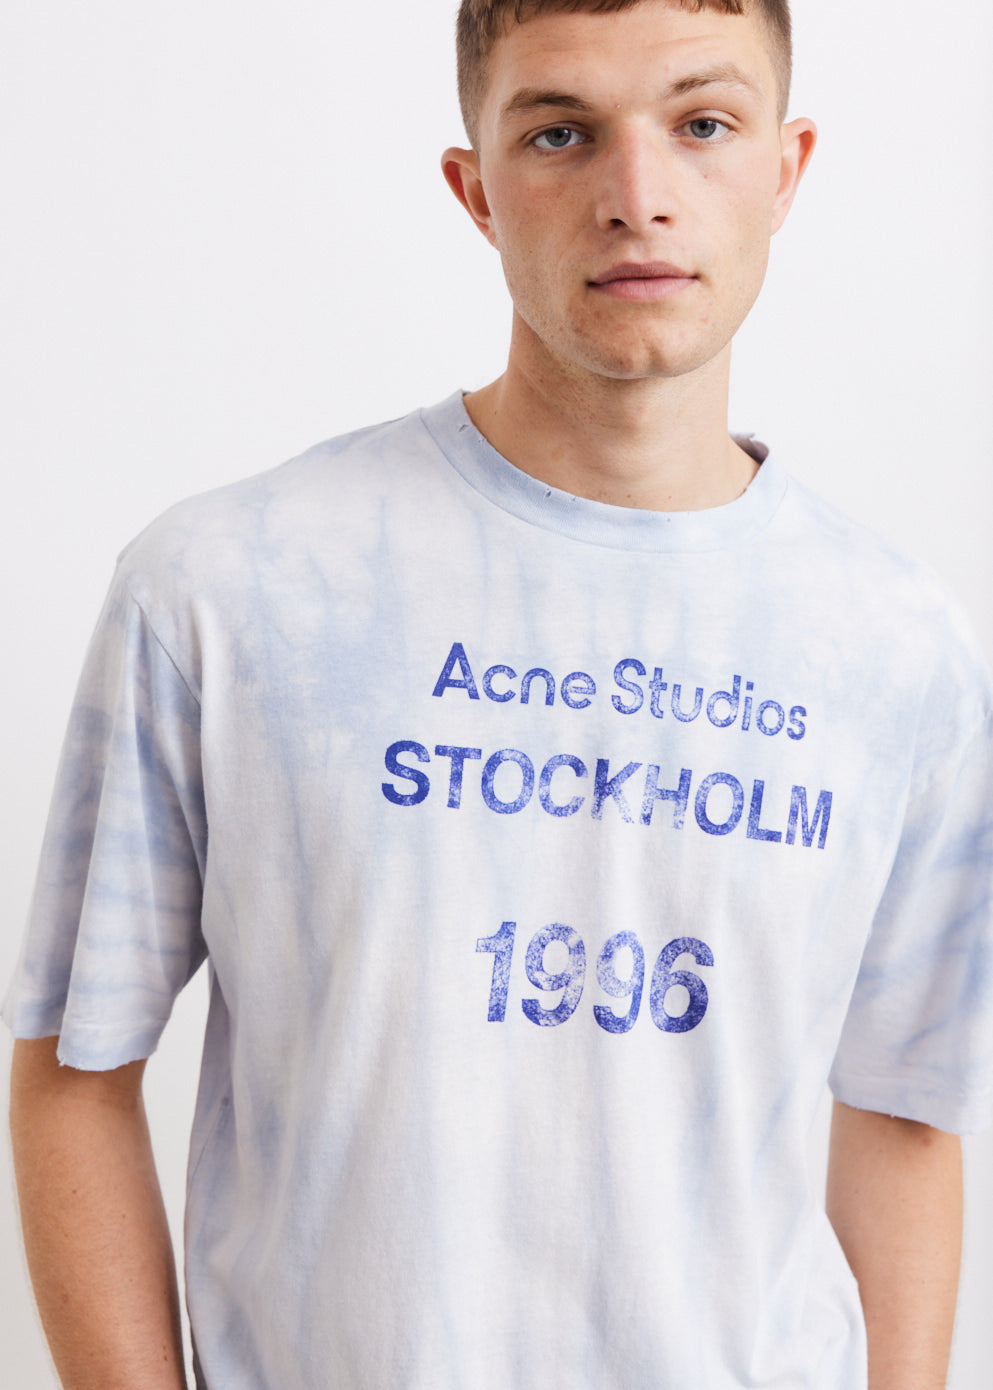 真剣に購入を考えてるのですがAcne Studios Stockholm 1996 T-shirt blue